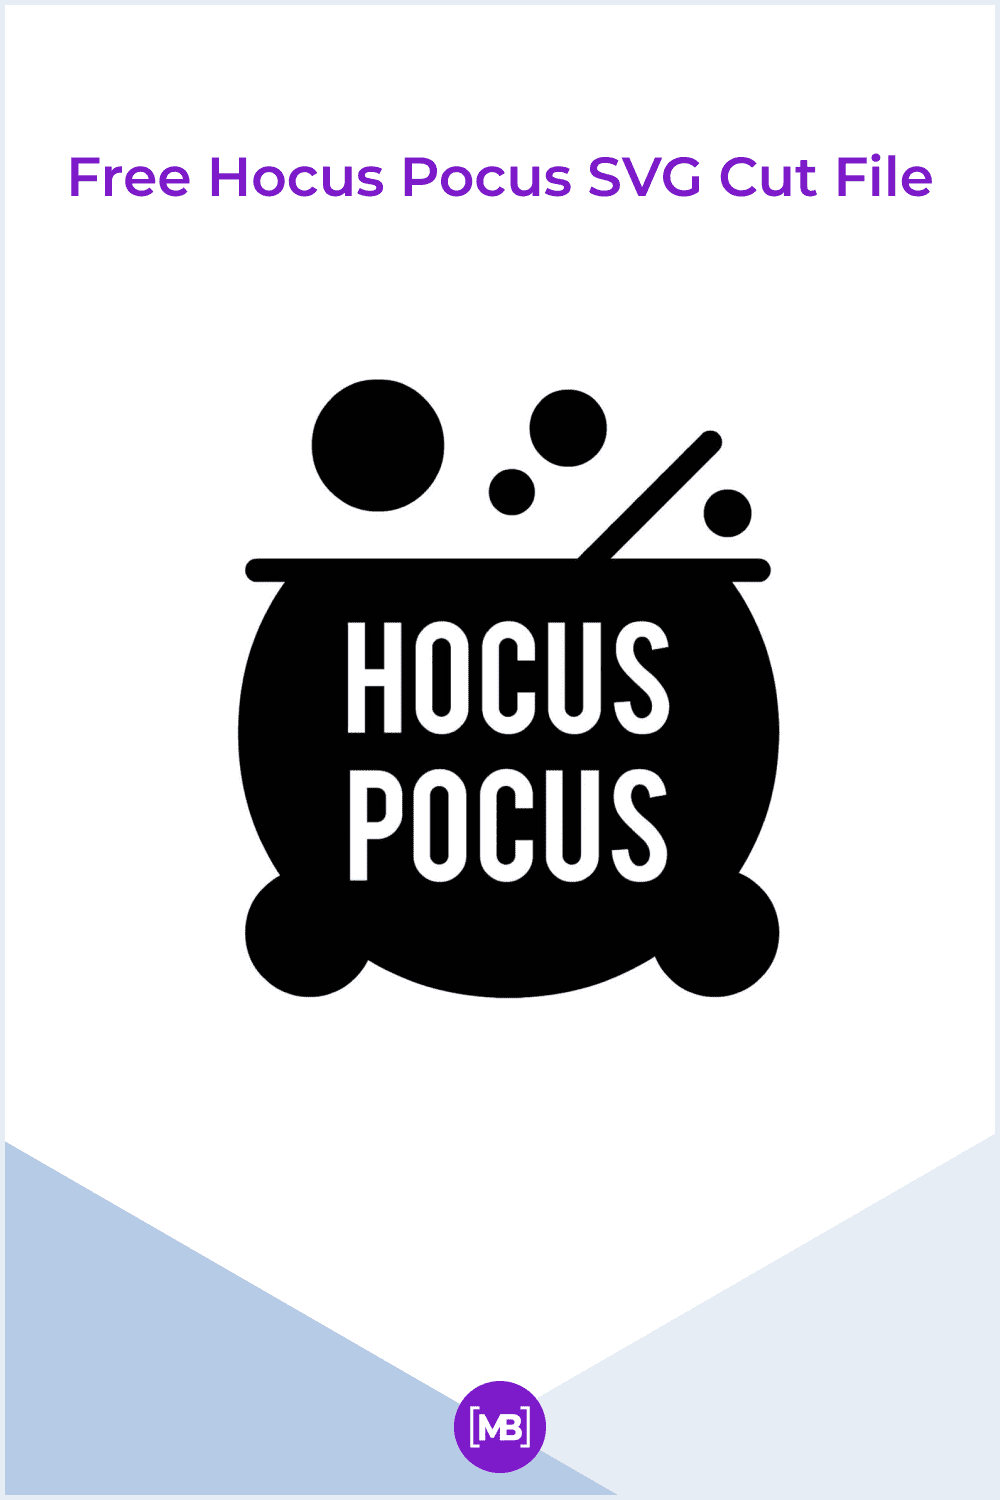 Free Hocus Pocus SVG Cut File.